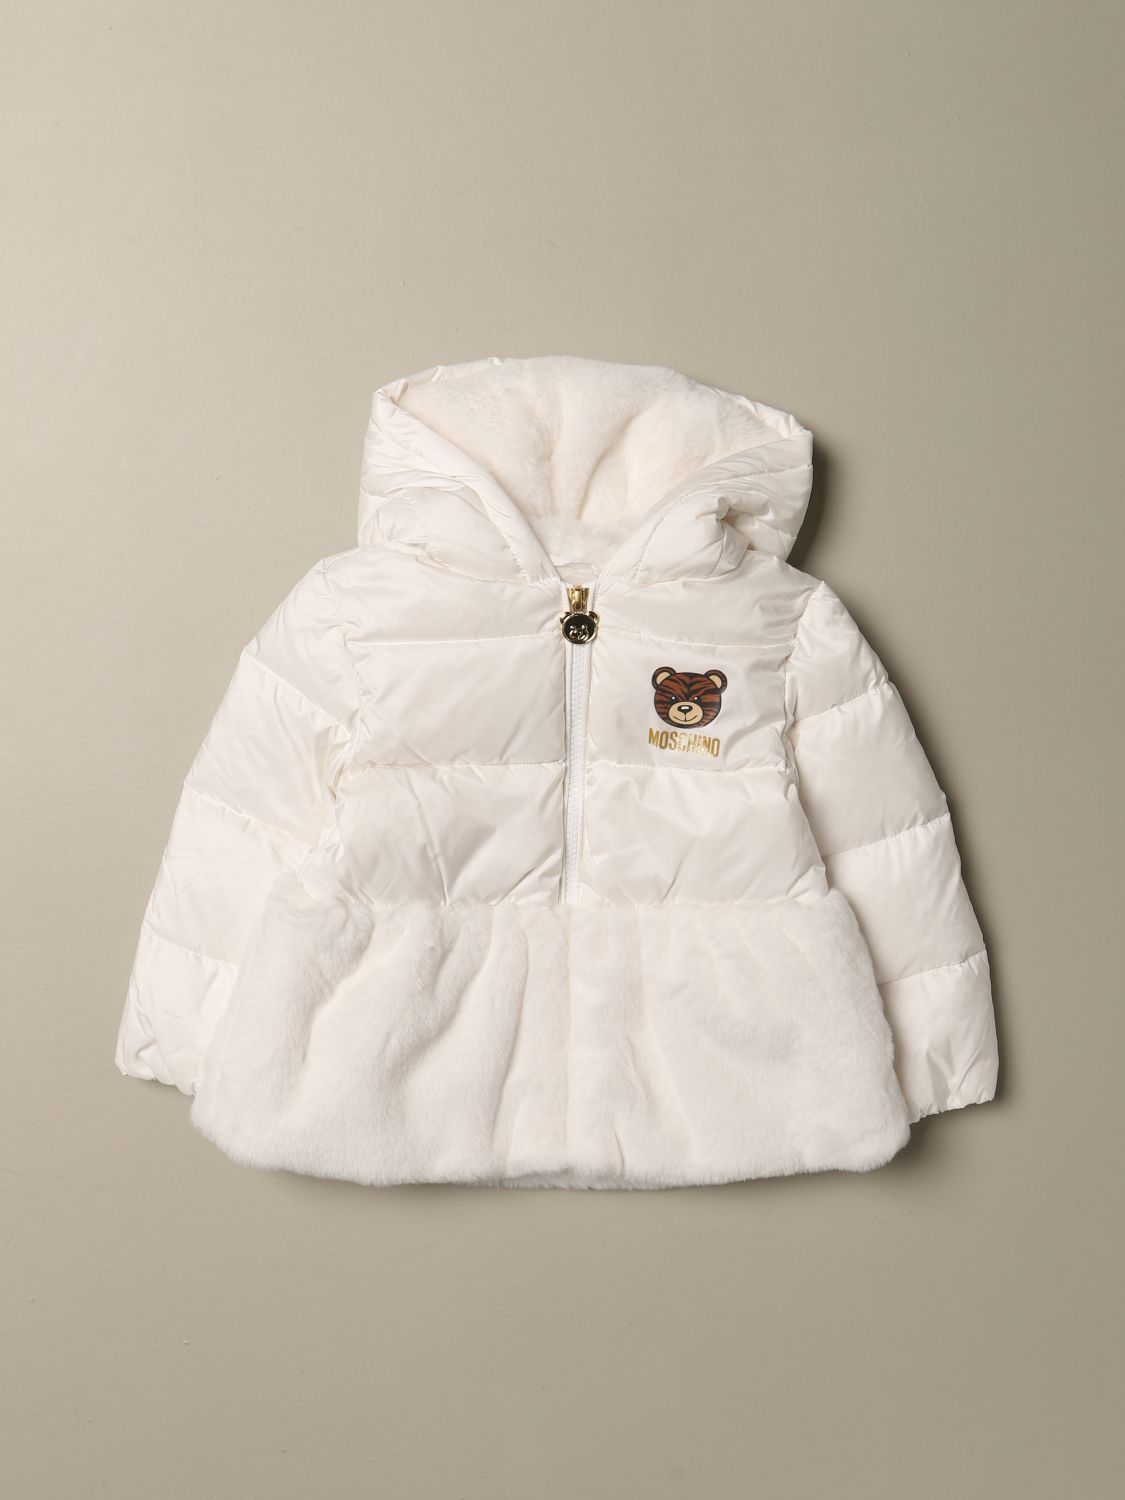 moschino white jacket